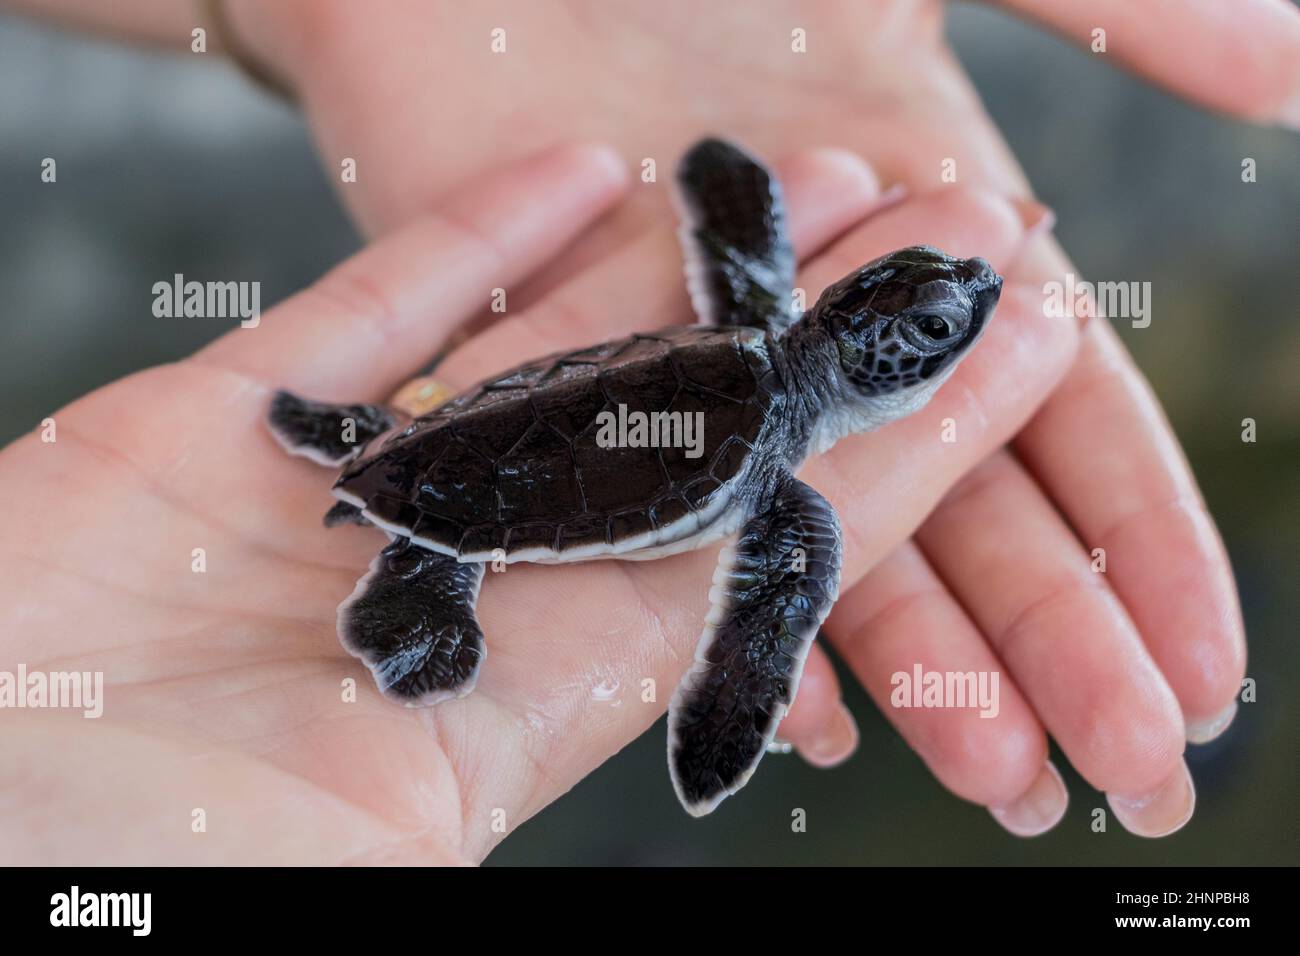 Bébé tortue noir sur les mains. Banque D'Images